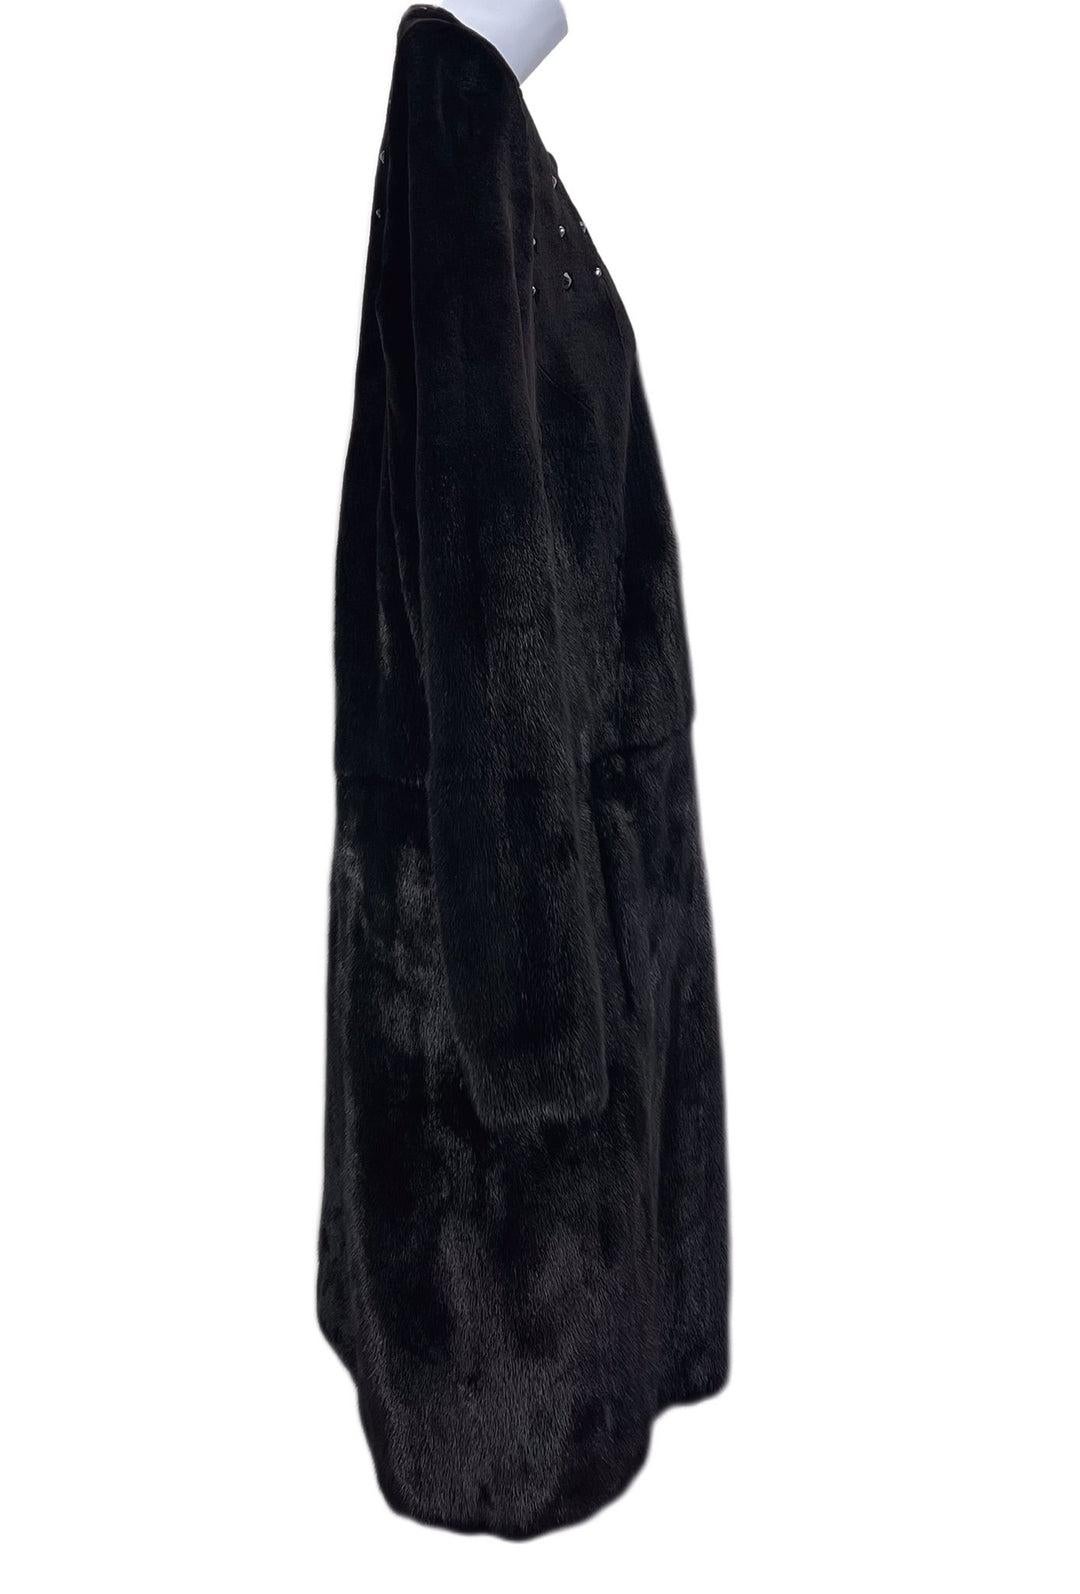 Christian Dior Mink Black Coat For Sale 1